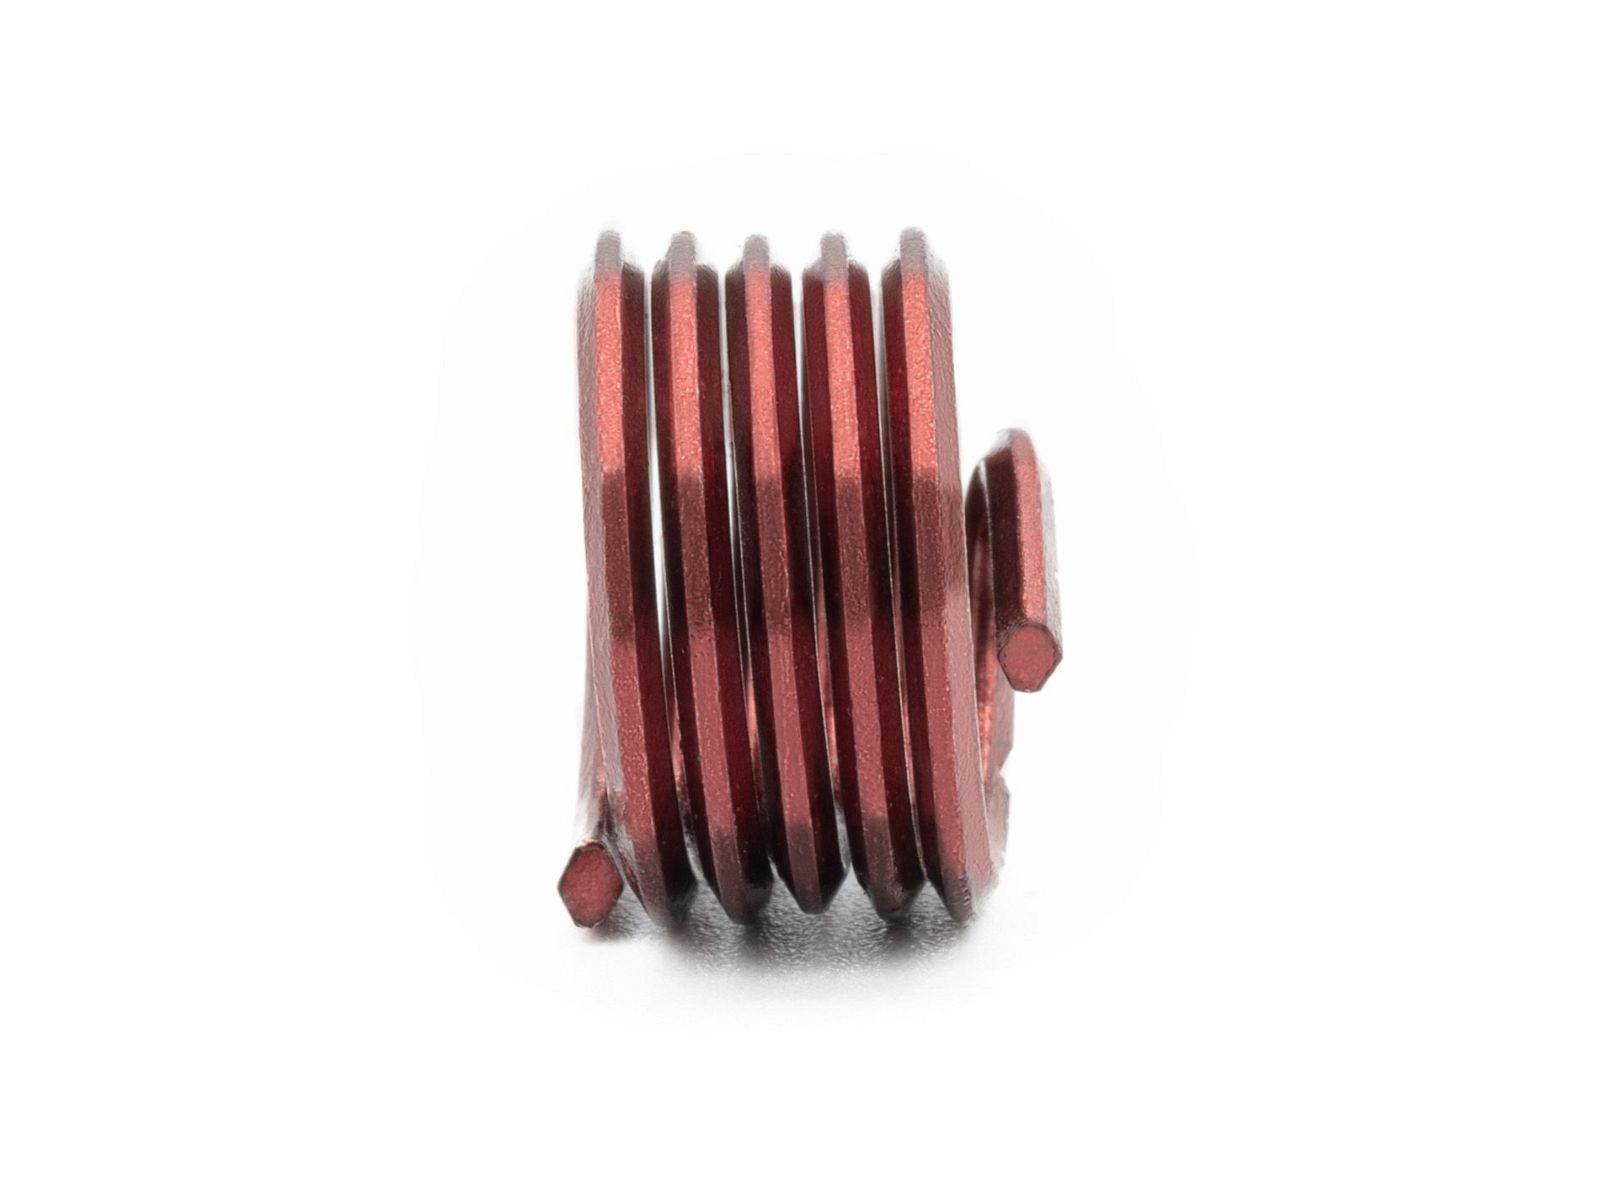 BaerCoil Wire Thread Inserts M 3 x 0.5 - 1.0 D (3 mm) - screw grip (screw locking) - 100 pcs.